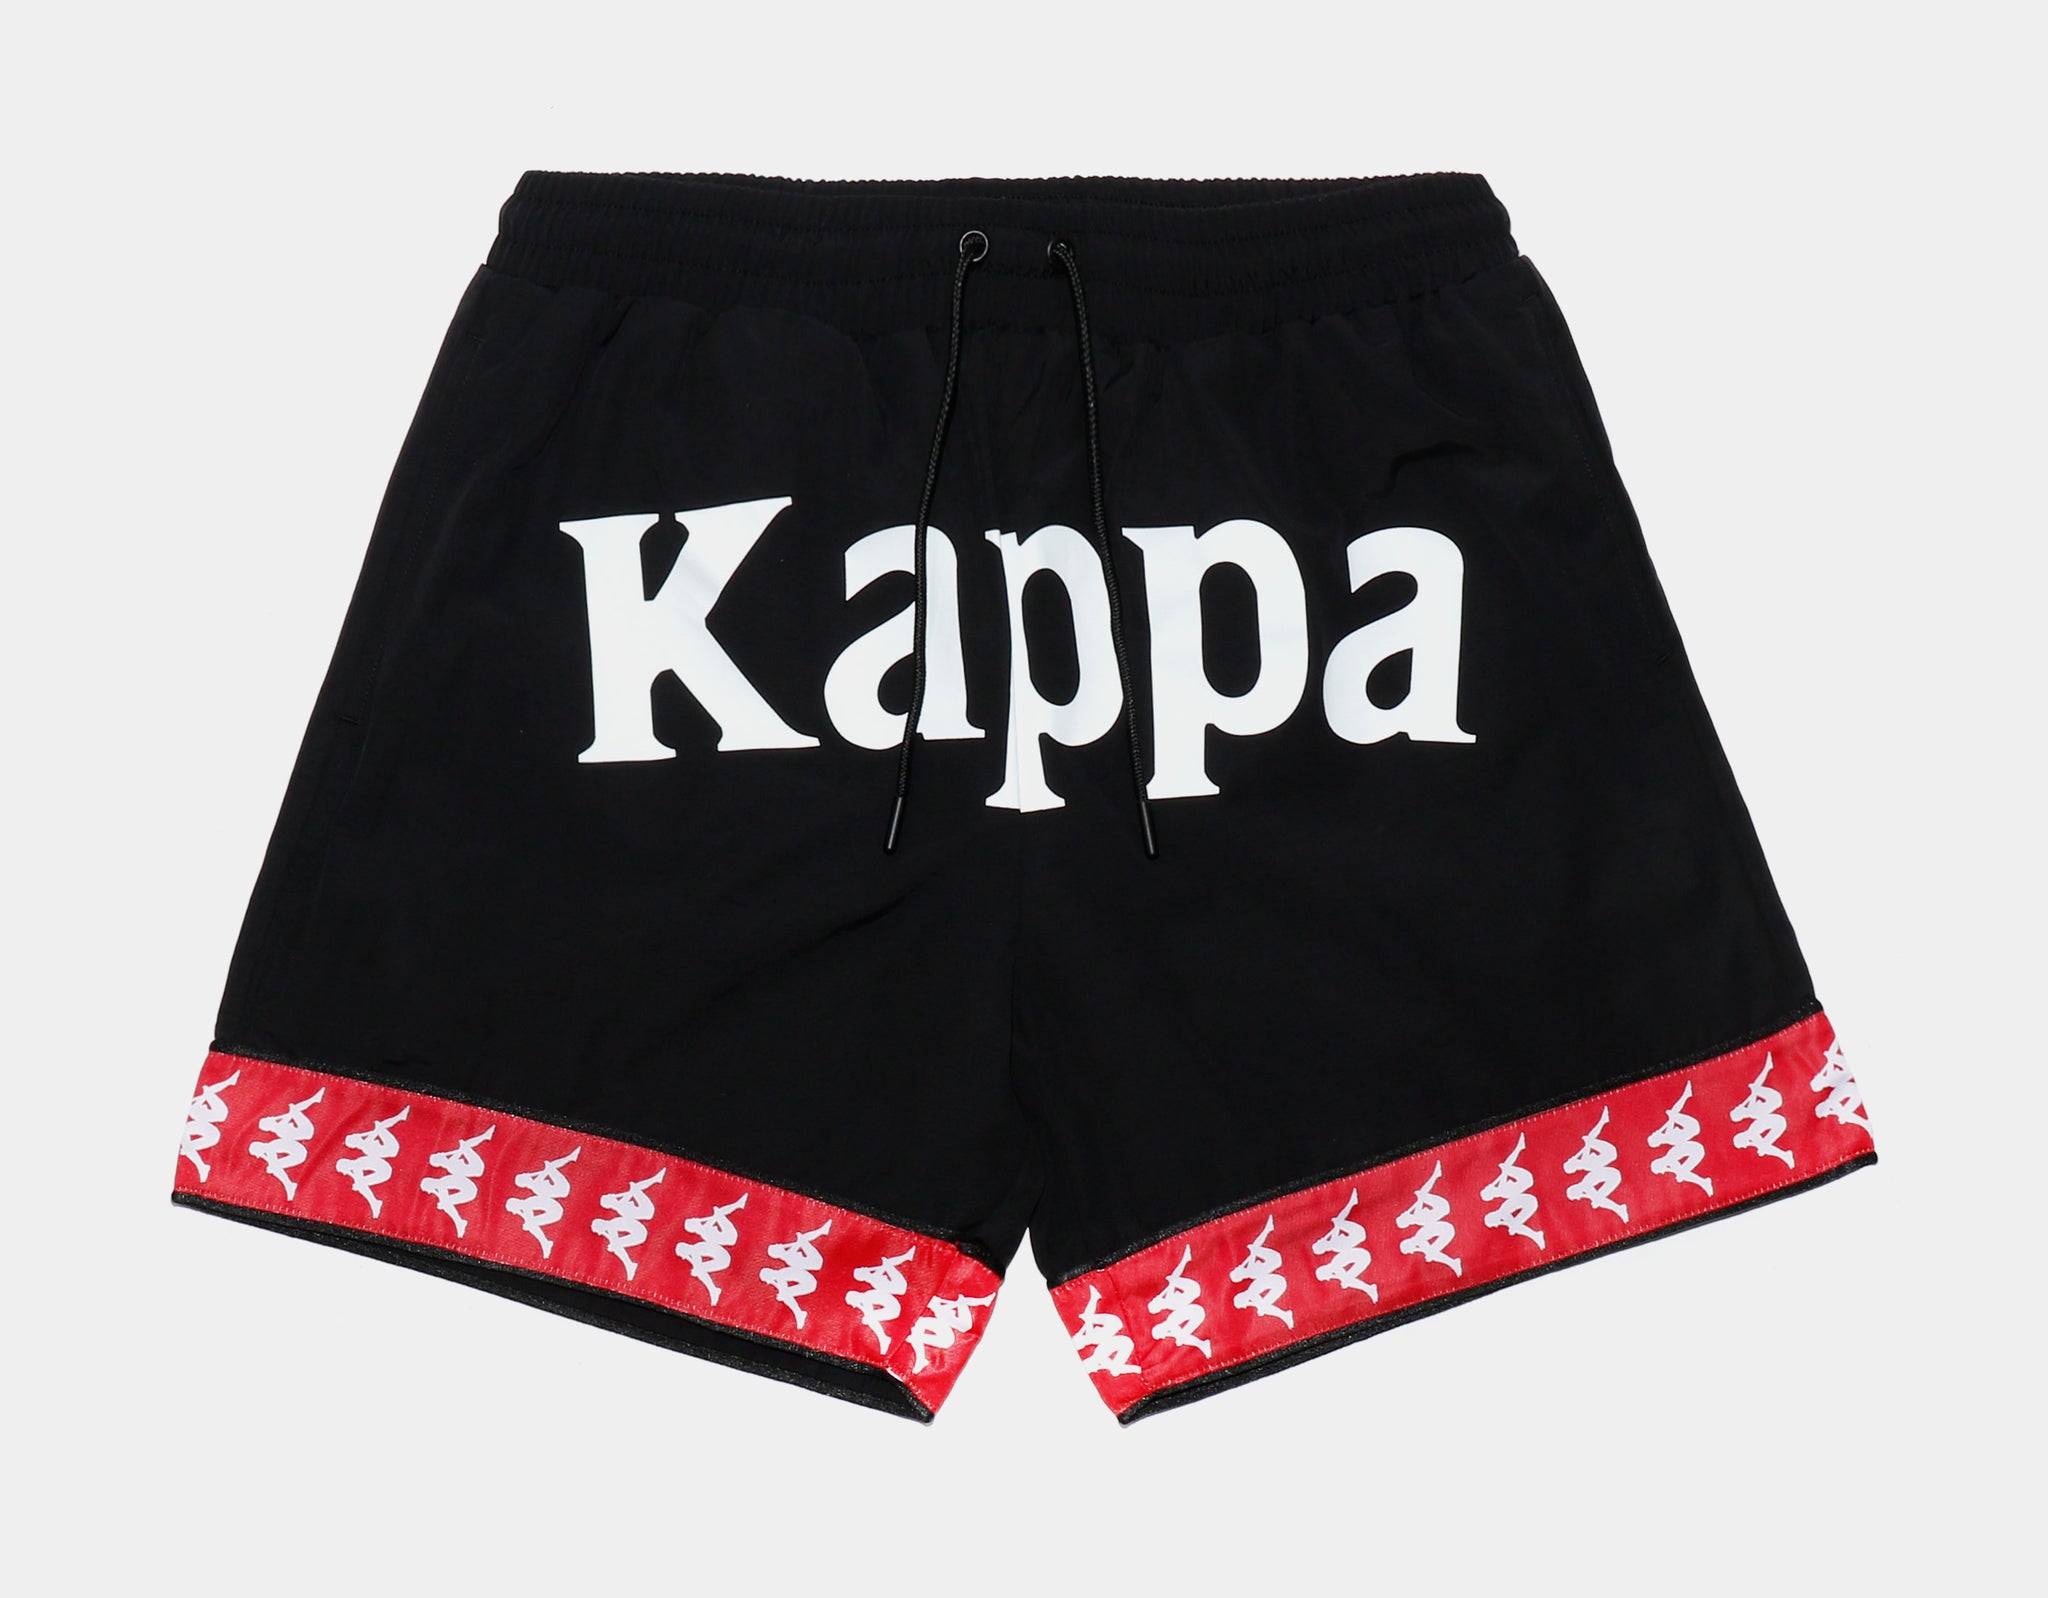 hage Maxim Blodig Kappa 222 Banda Calabash 3 Woven Shorts Mens Short Black Red 381E5MW-A0M –  Shoe Palace